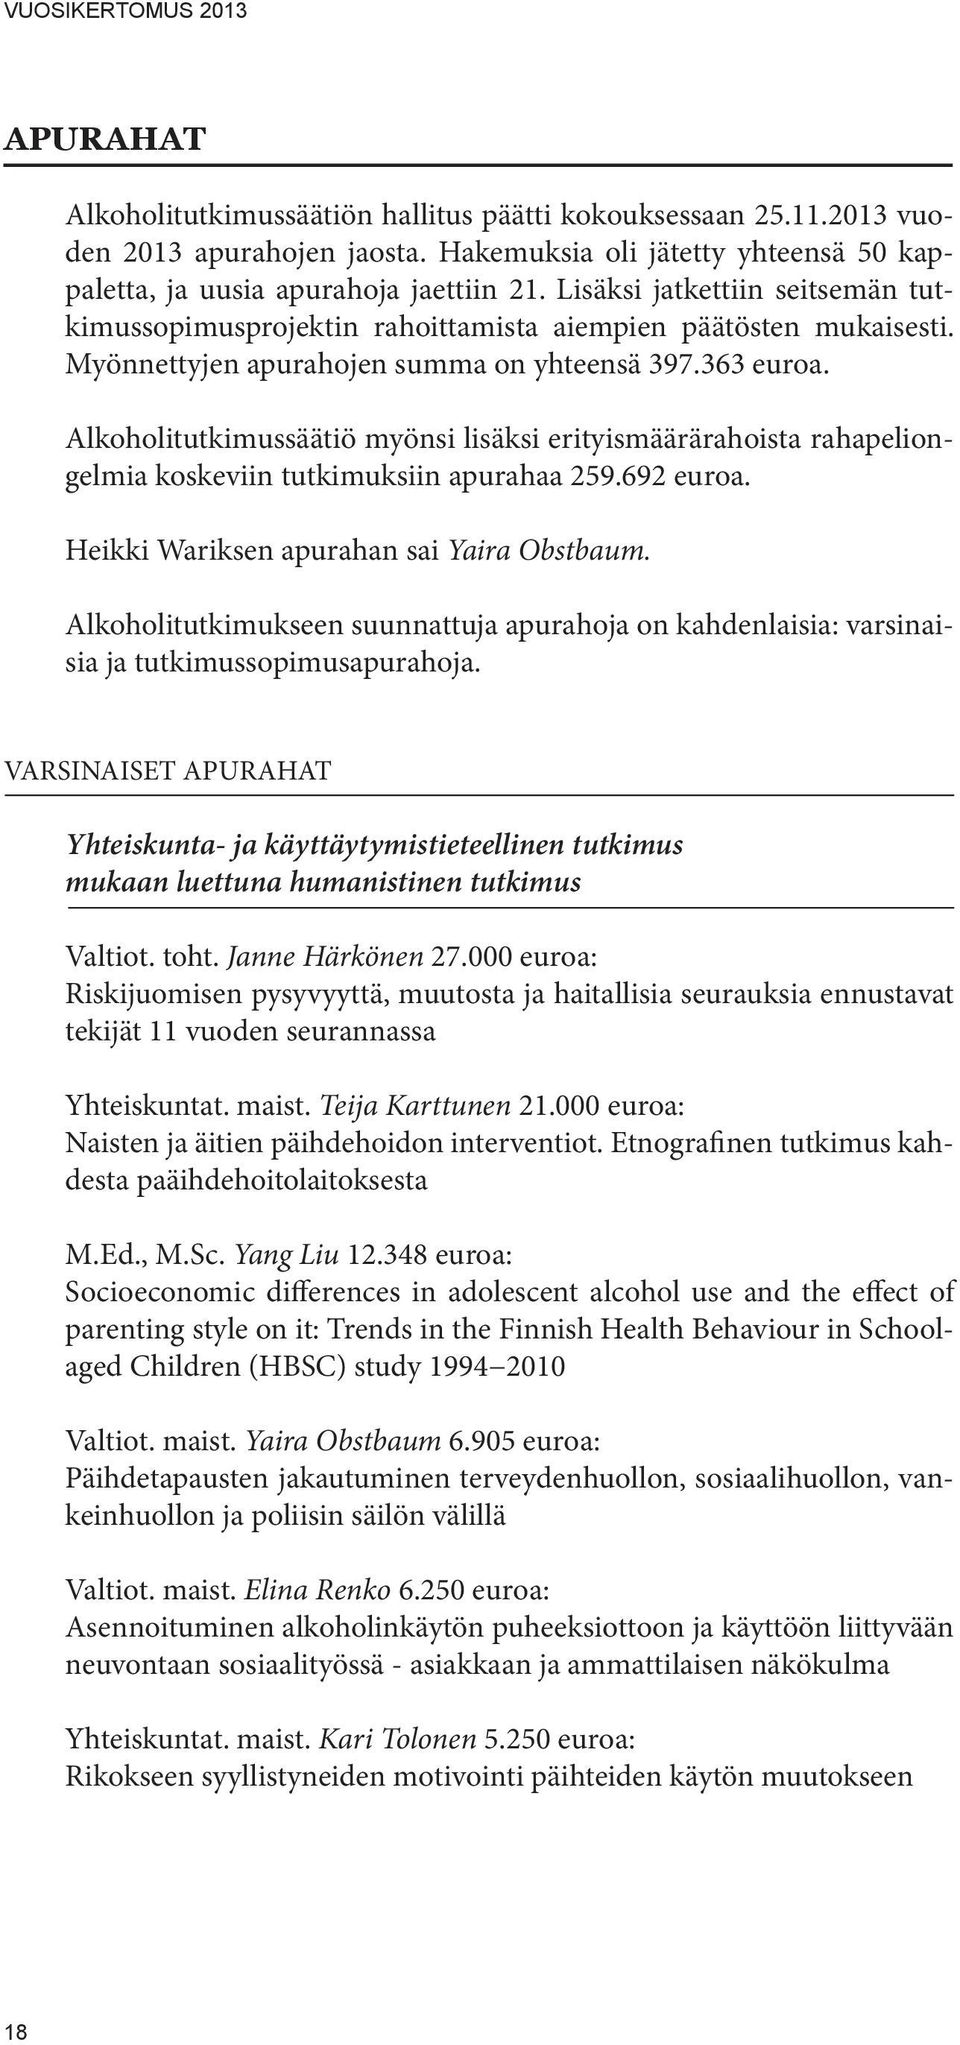 Alkoholitutkimussäätiö myönsi lisäksi erityismäärärahoista rahapeliongelmia koskeviin tutkimuksiin apurahaa 259.692 euroa. Heikki Wariksen apurahan sai Yaira Obstbaum.